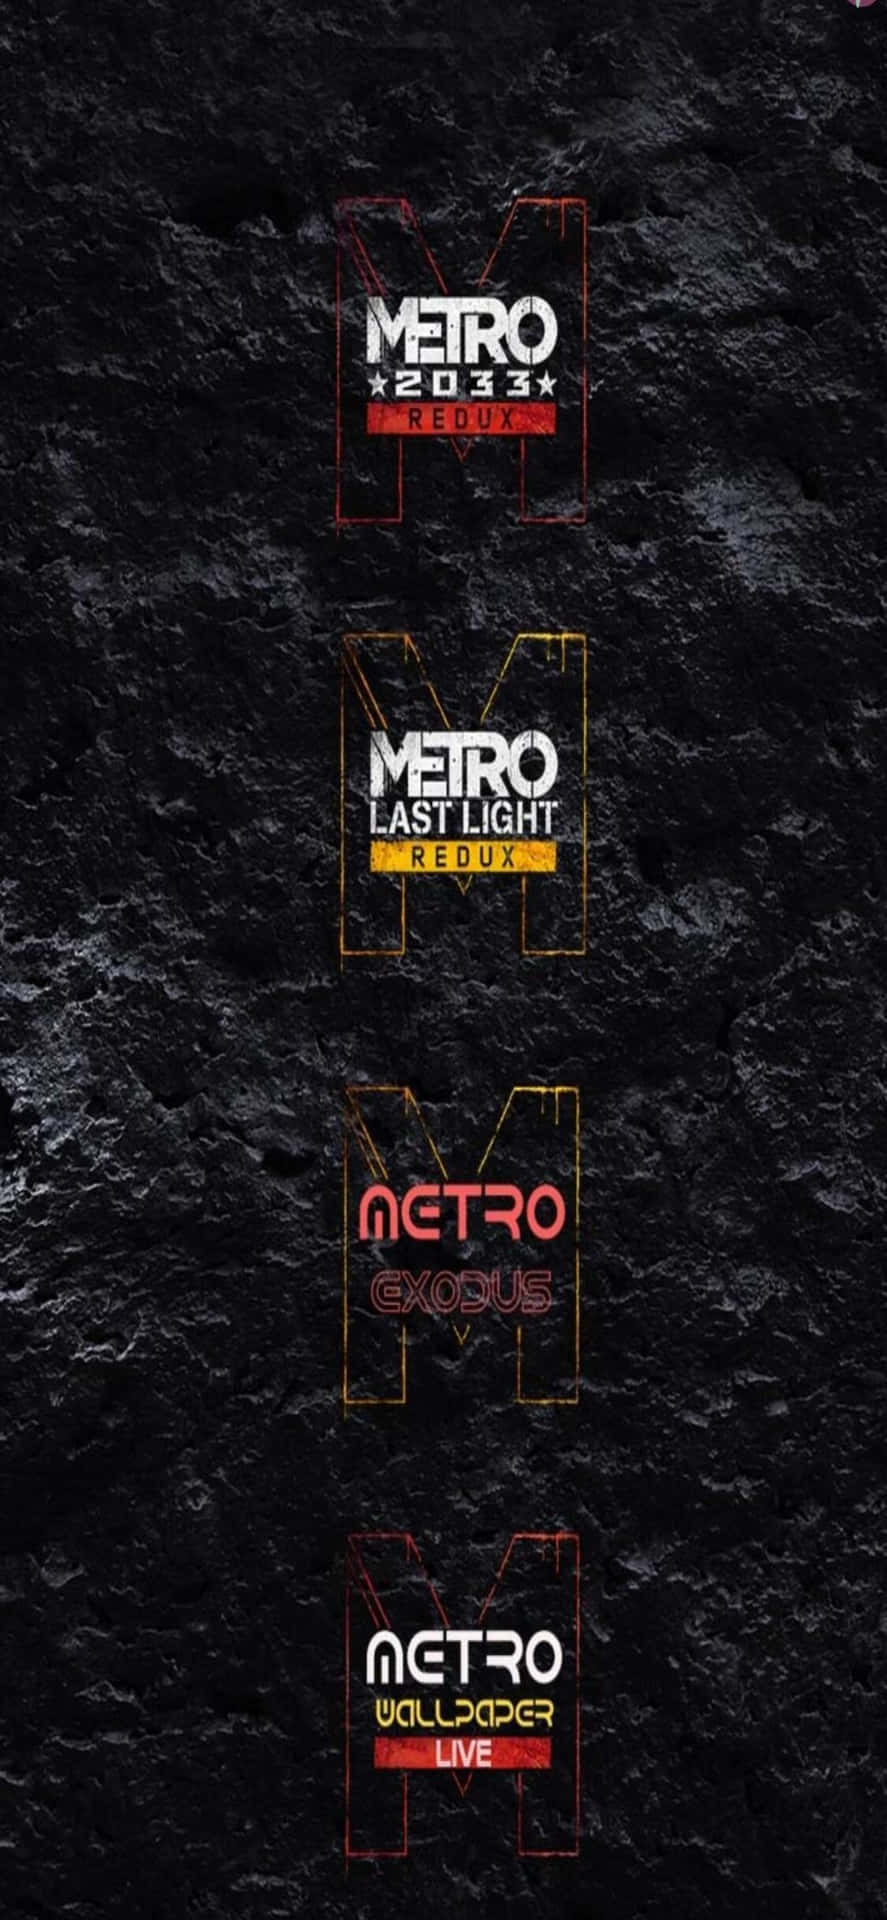 Metrospelens Sortiment Iphone X Metro Last Light-bakgrund.